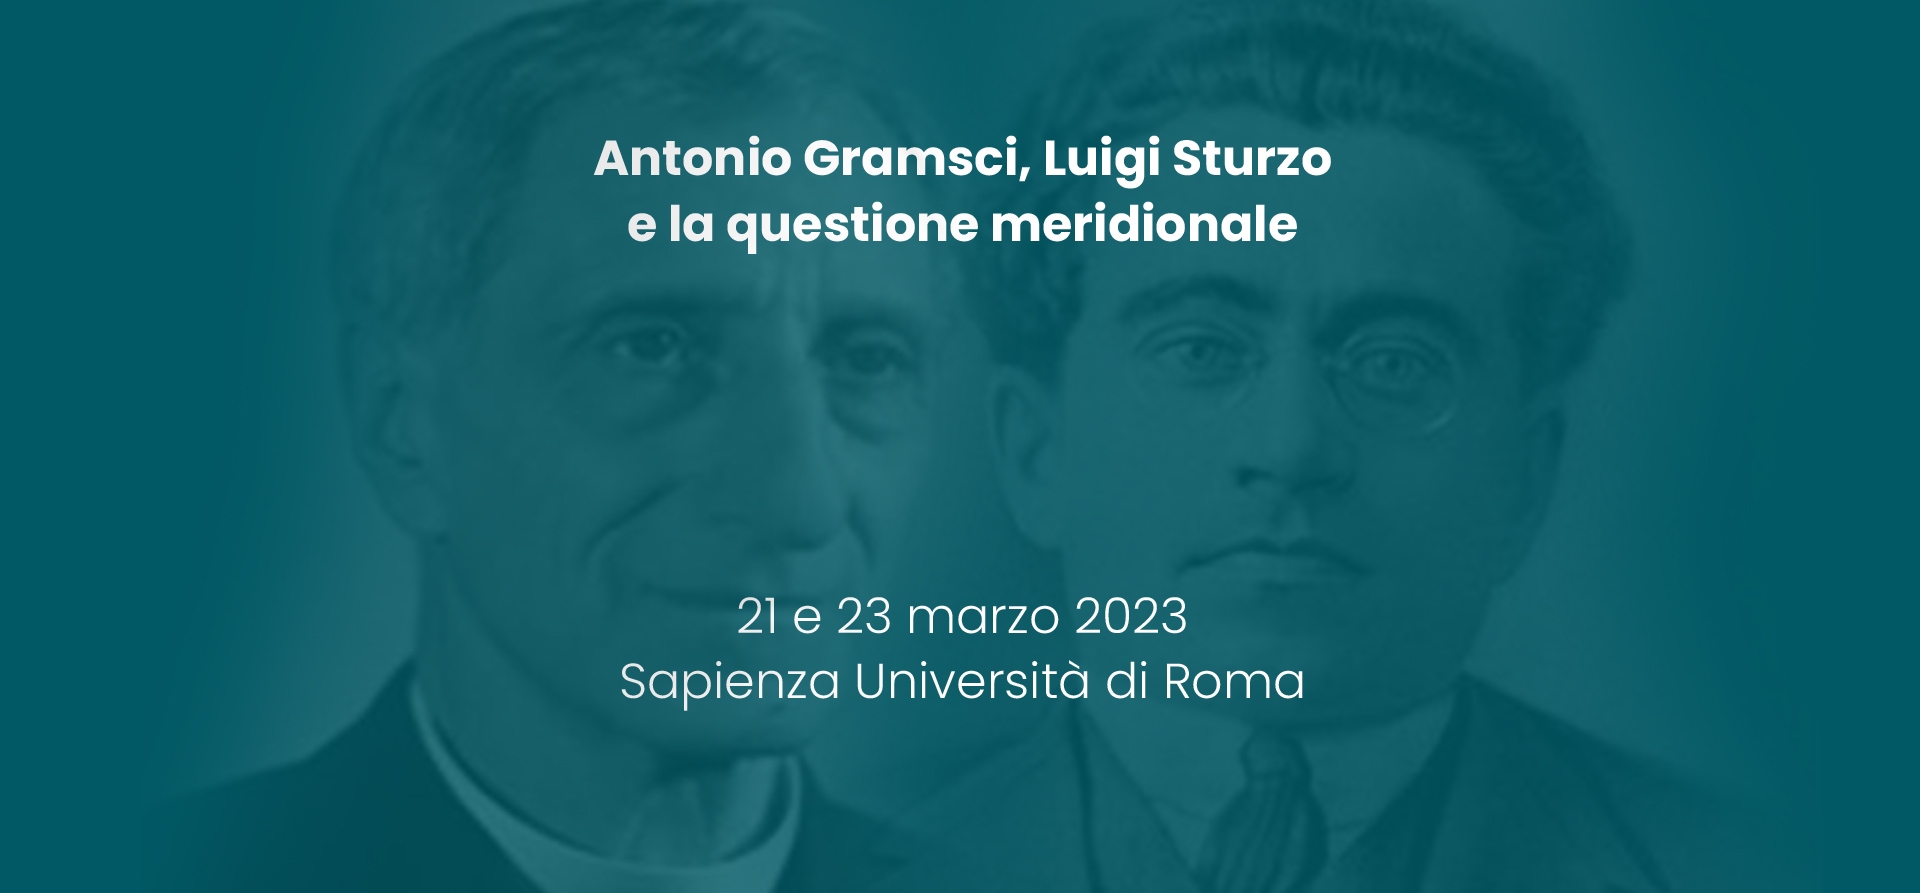 ANTONIO GRAMSCI, LUIGI STURZO